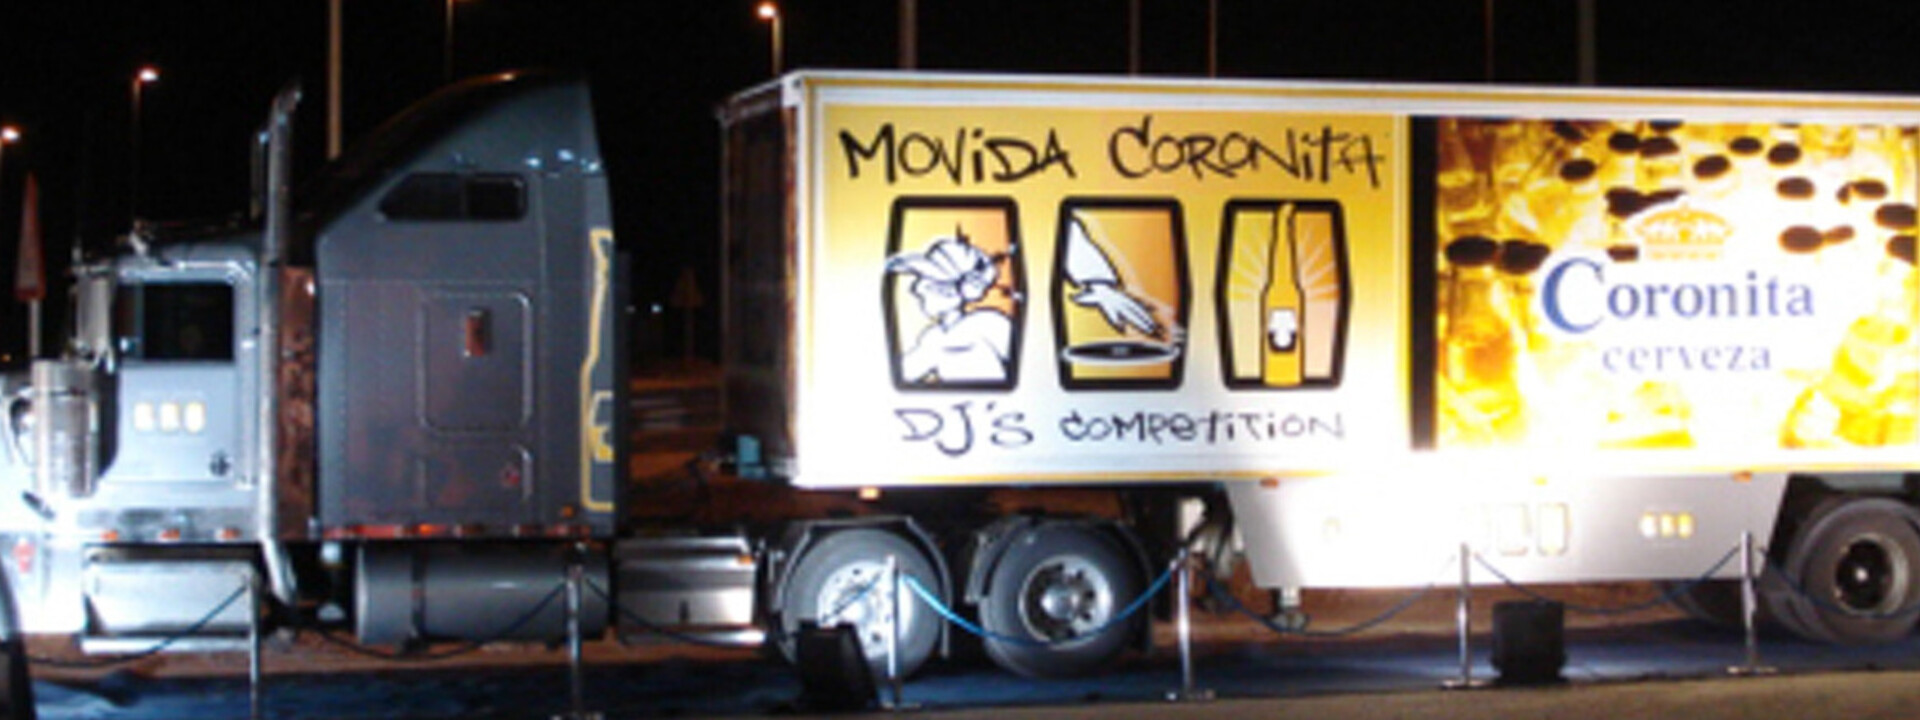 Corona-Truck.jpg